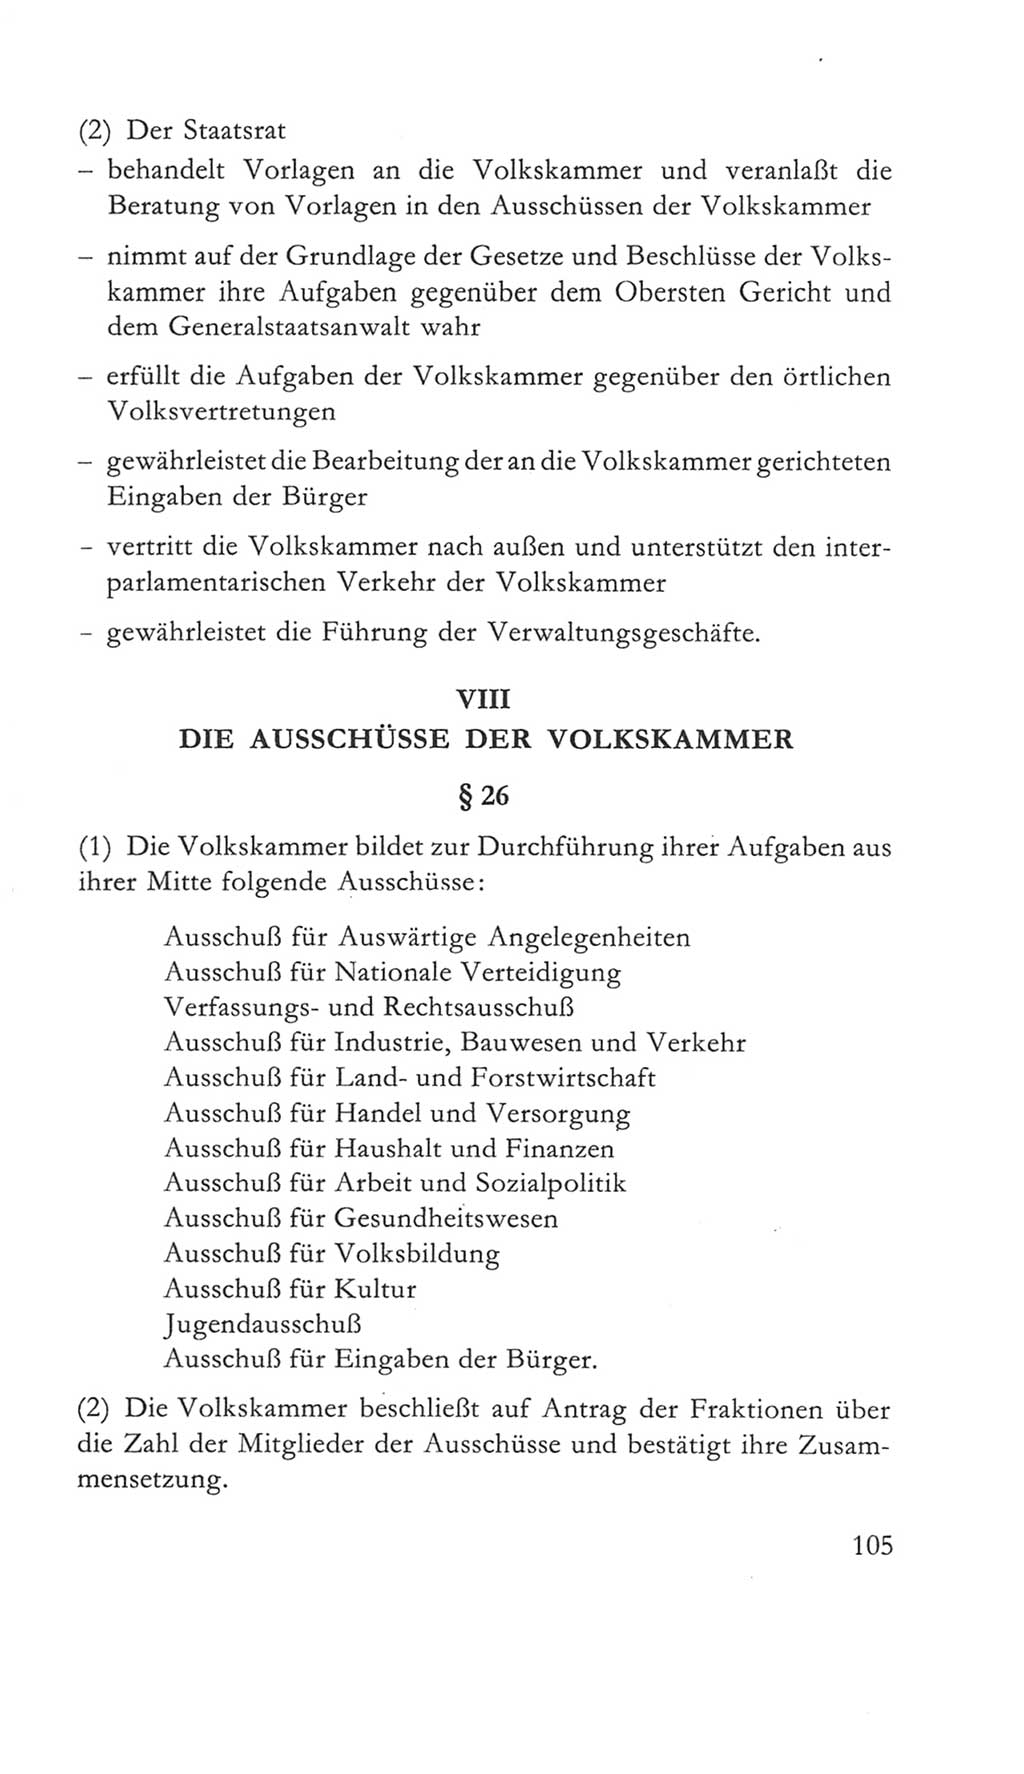 Volkskammer (VK) der Deutschen Demokratischen Republik (DDR) 5. Wahlperiode 1967-1971, Seite 105 (VK. DDR 5. WP. 1967-1971, S. 105)